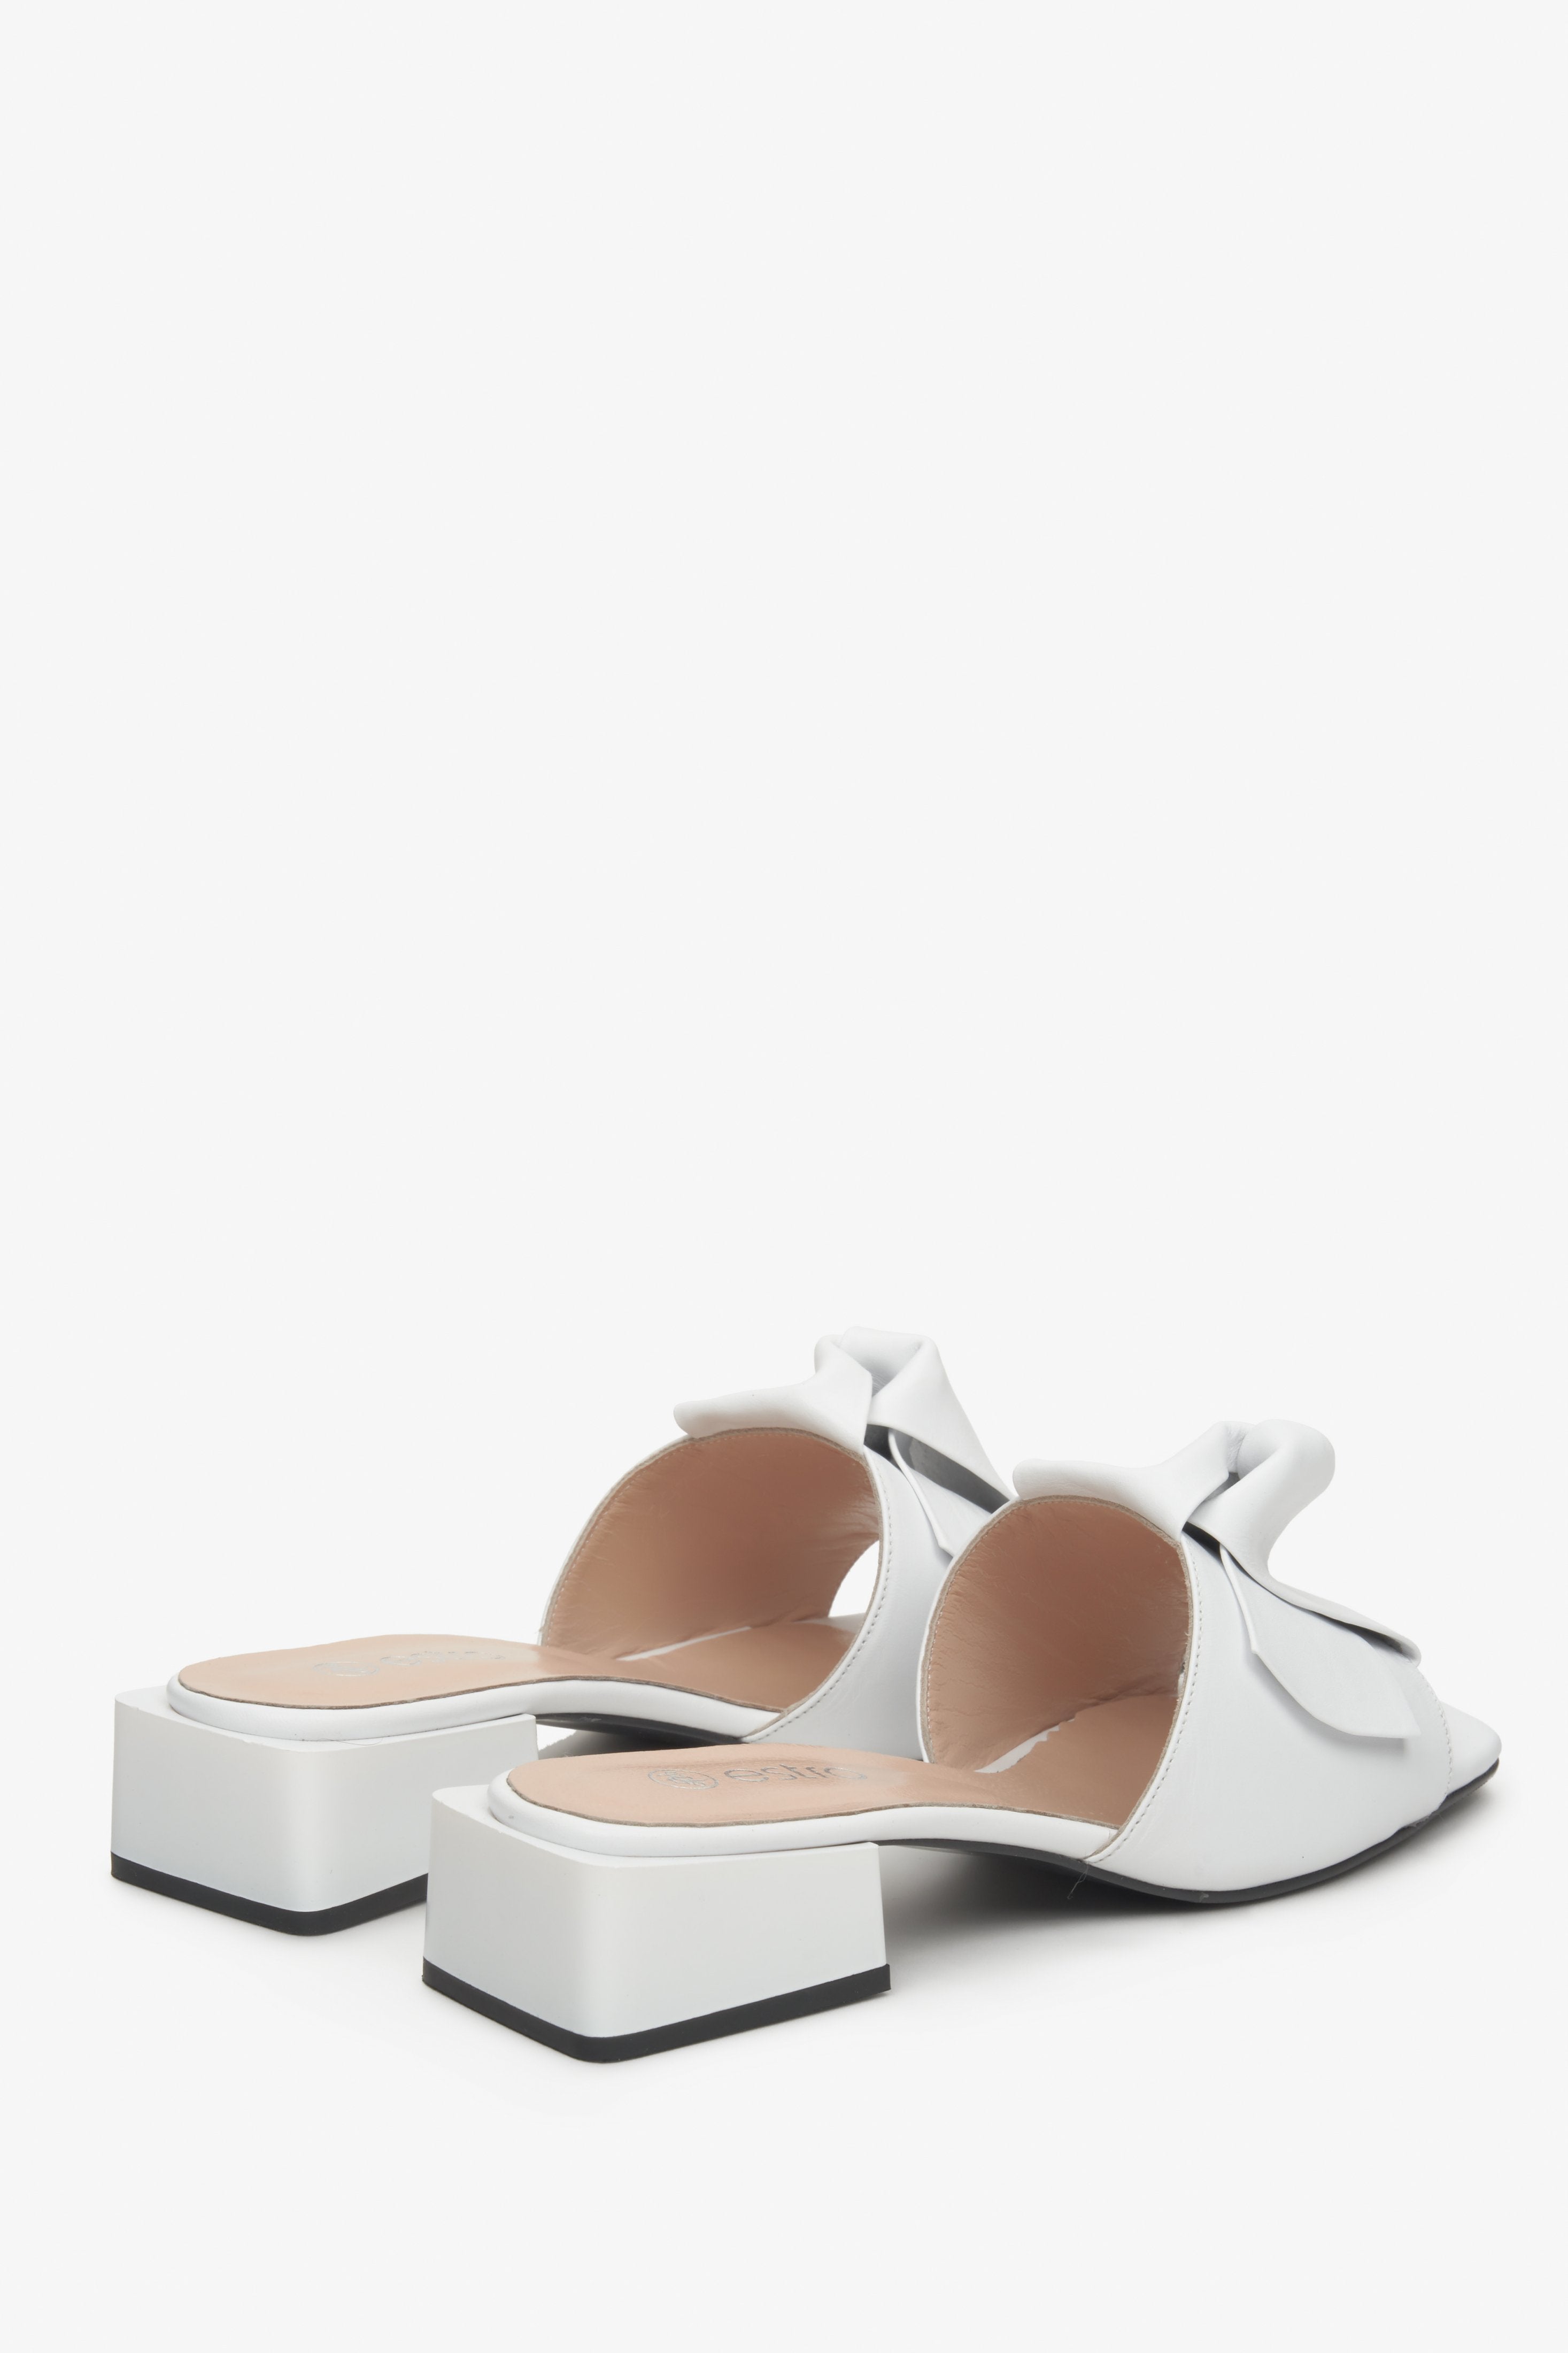 Klapki damskie Estro ze skóry naturalnej w kolorze białym na niskim obcasie - prezentacja obcasa i linii bocznej butów.